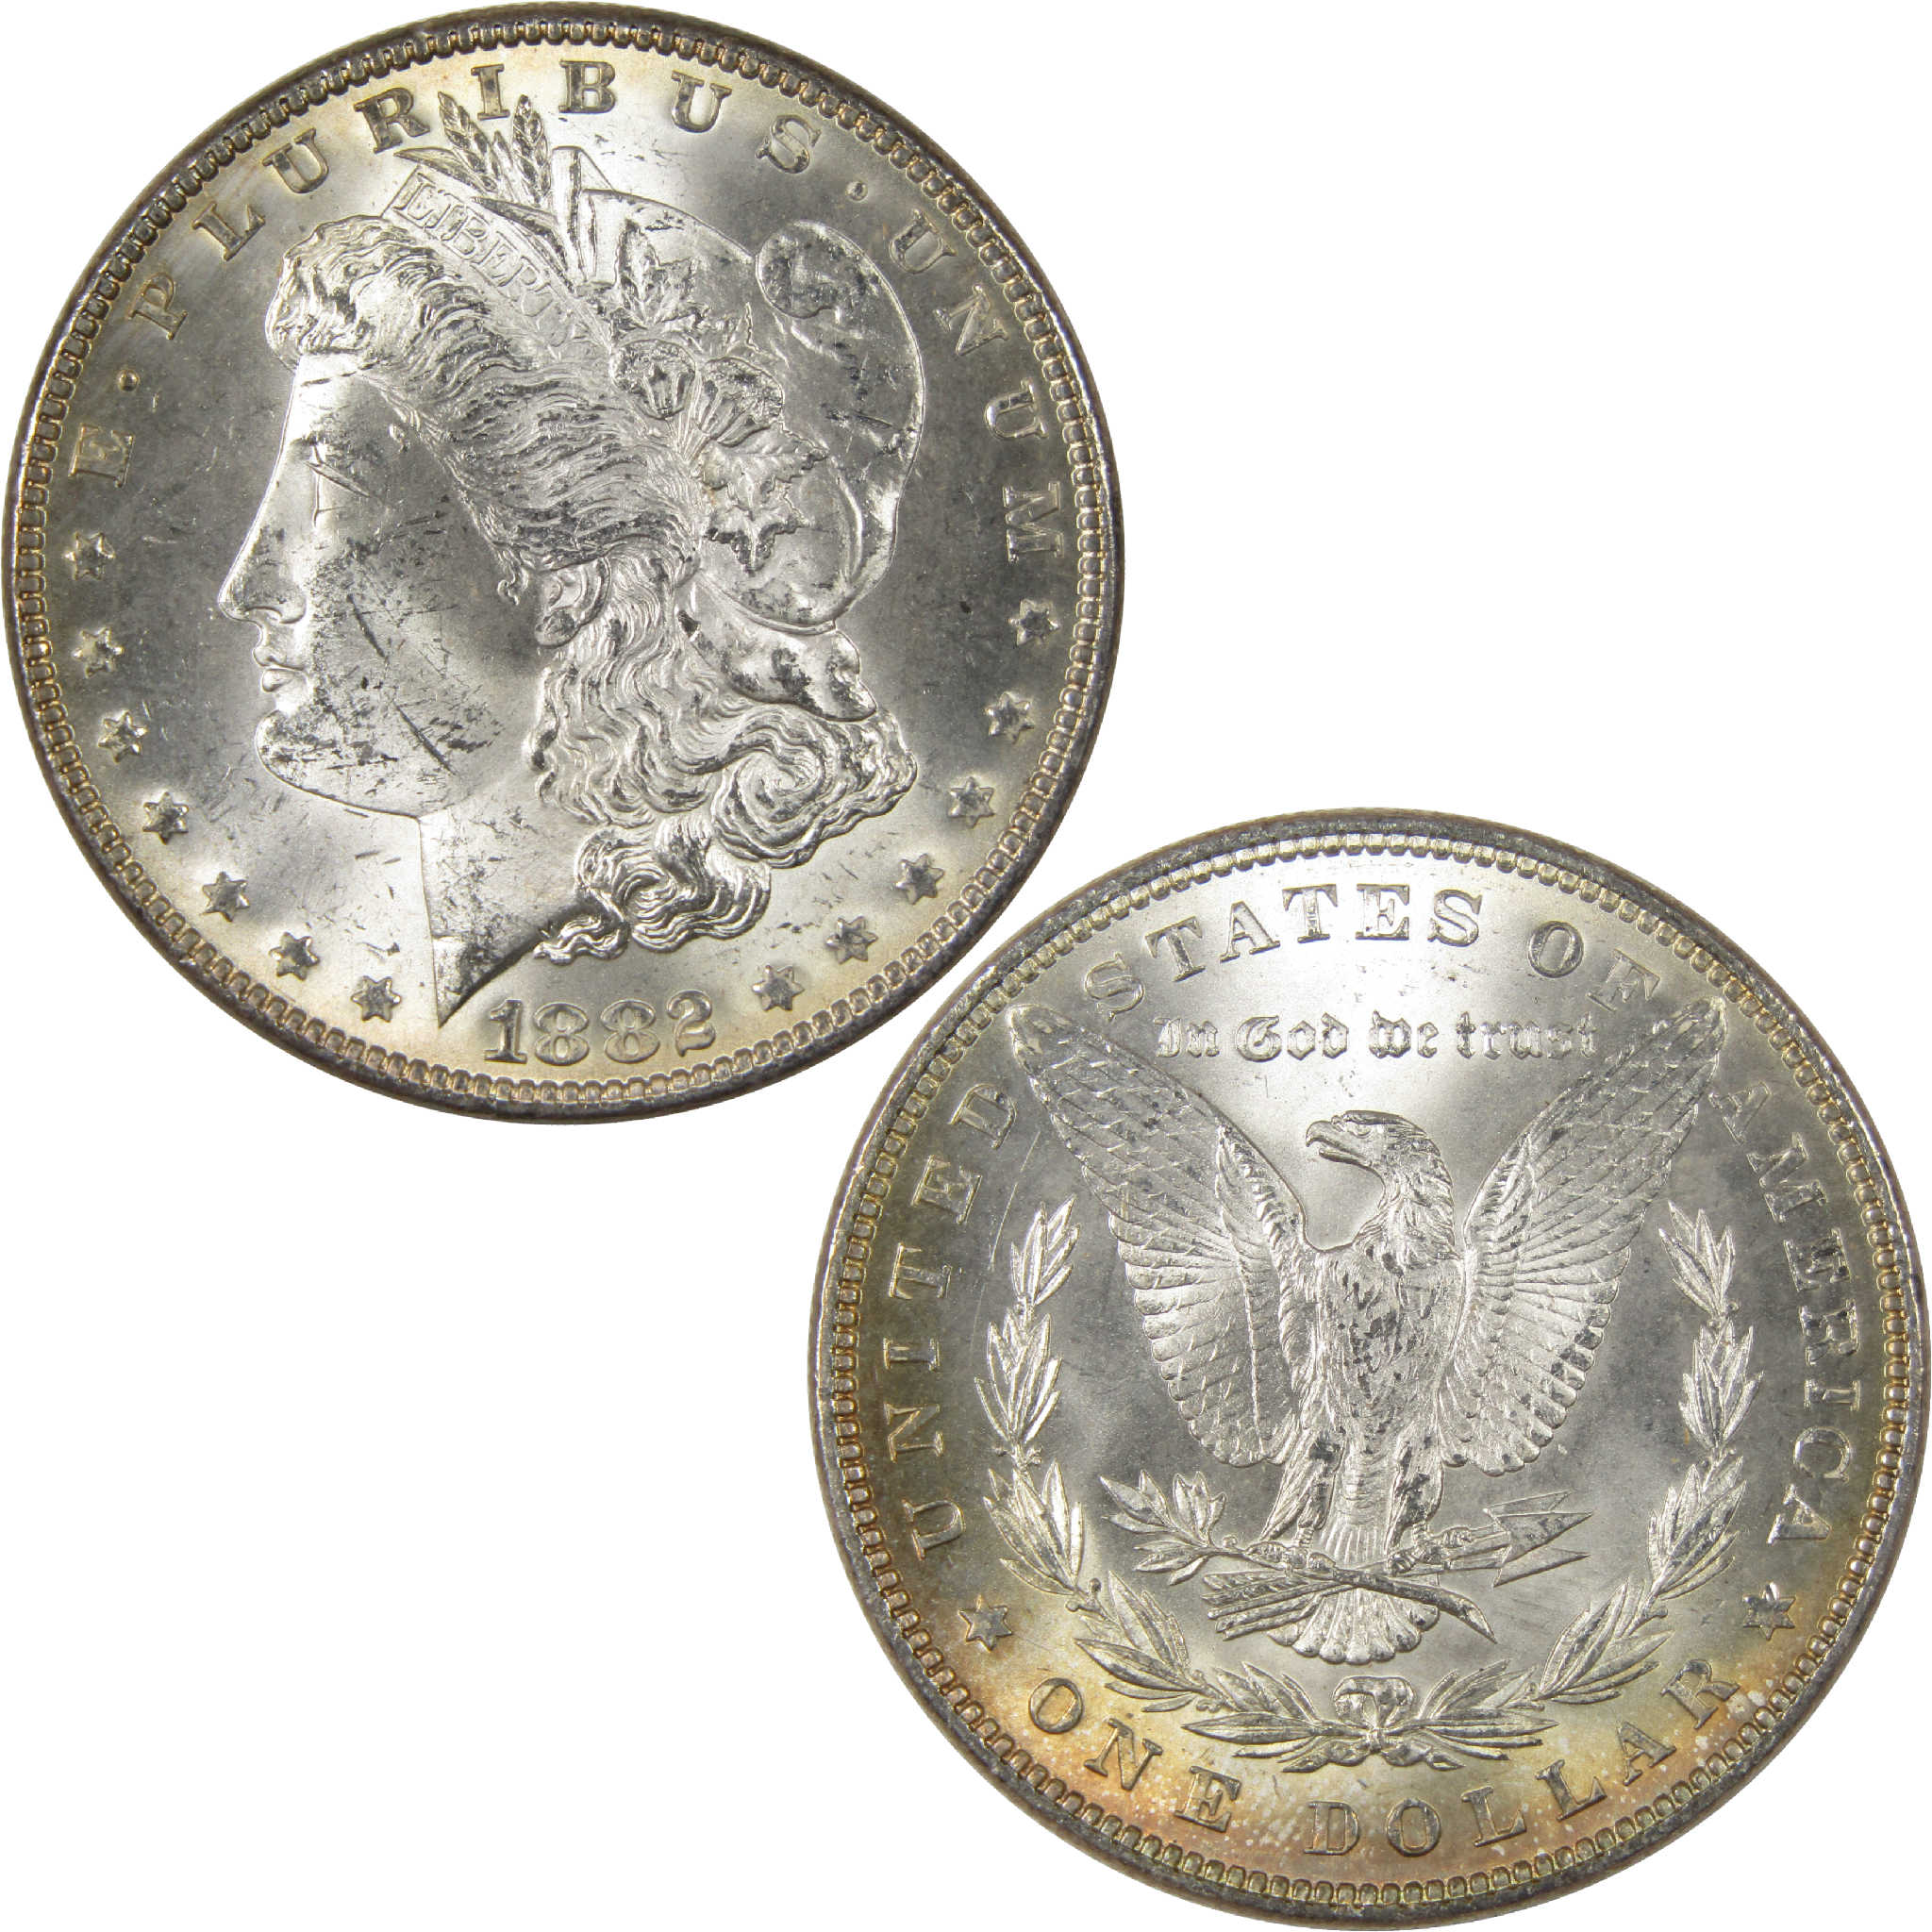 1882 Morgan Dollar Uncirculated Silver $1 Coin - Morgan coin - Morgan silver dollar - Morgan silver dollar for sale - Profile Coins &amp; Collectibles